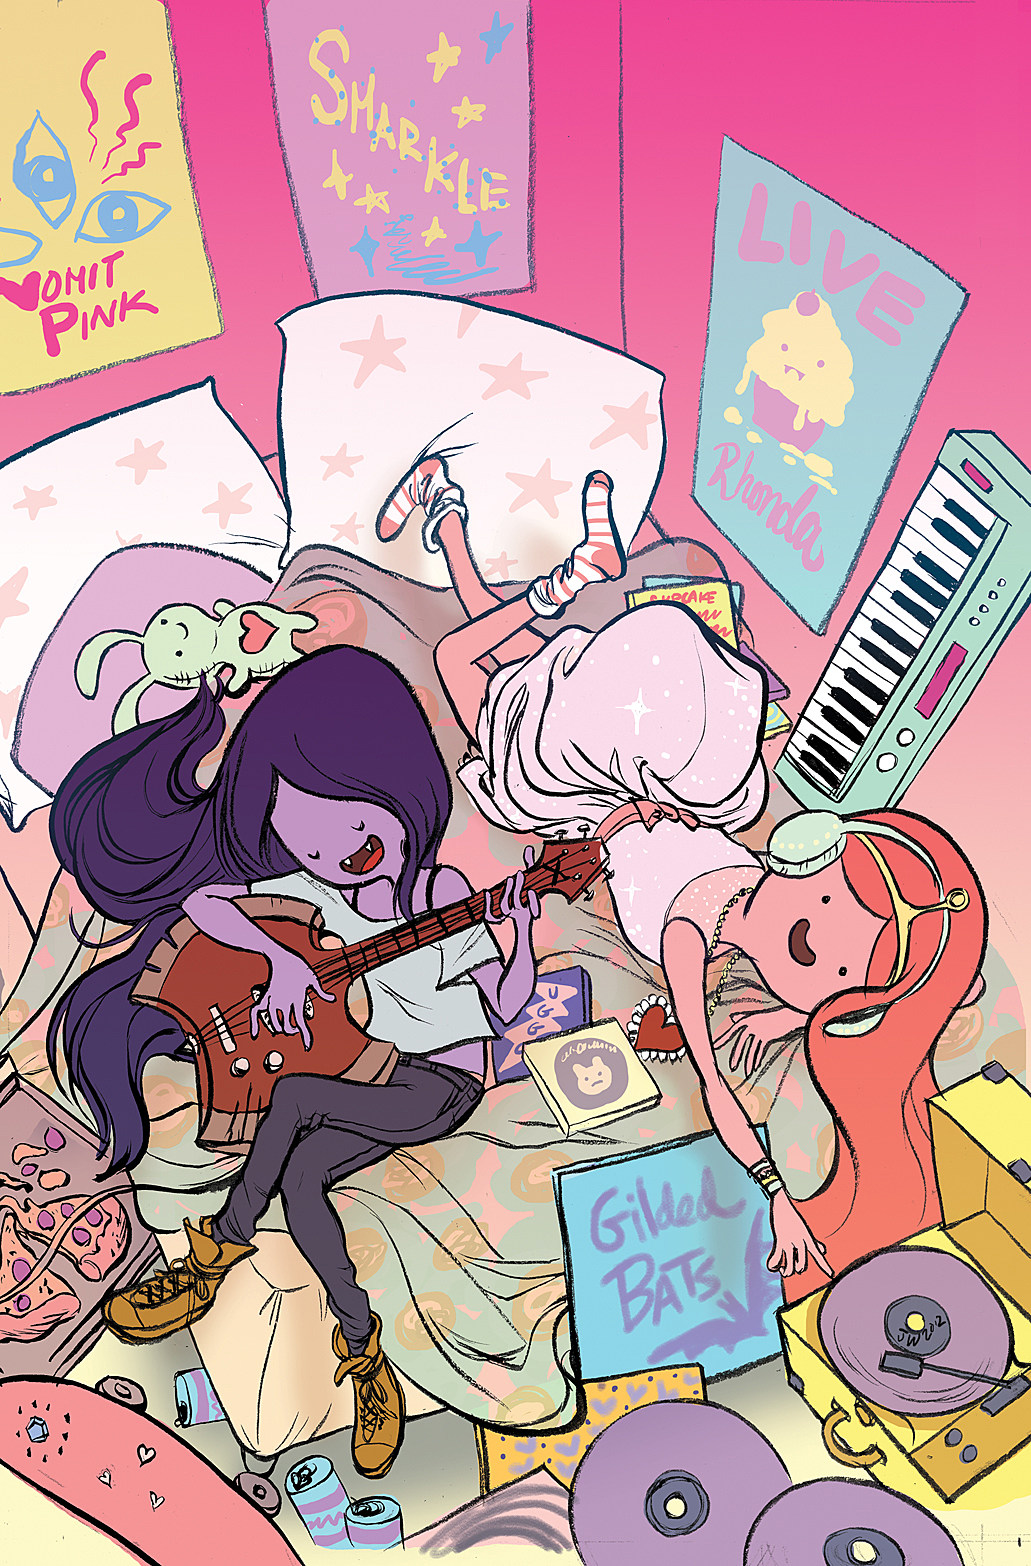 Marceline sitzt auf dem Bett und spielt Gitarre, Princess Bubblegum hört Musik